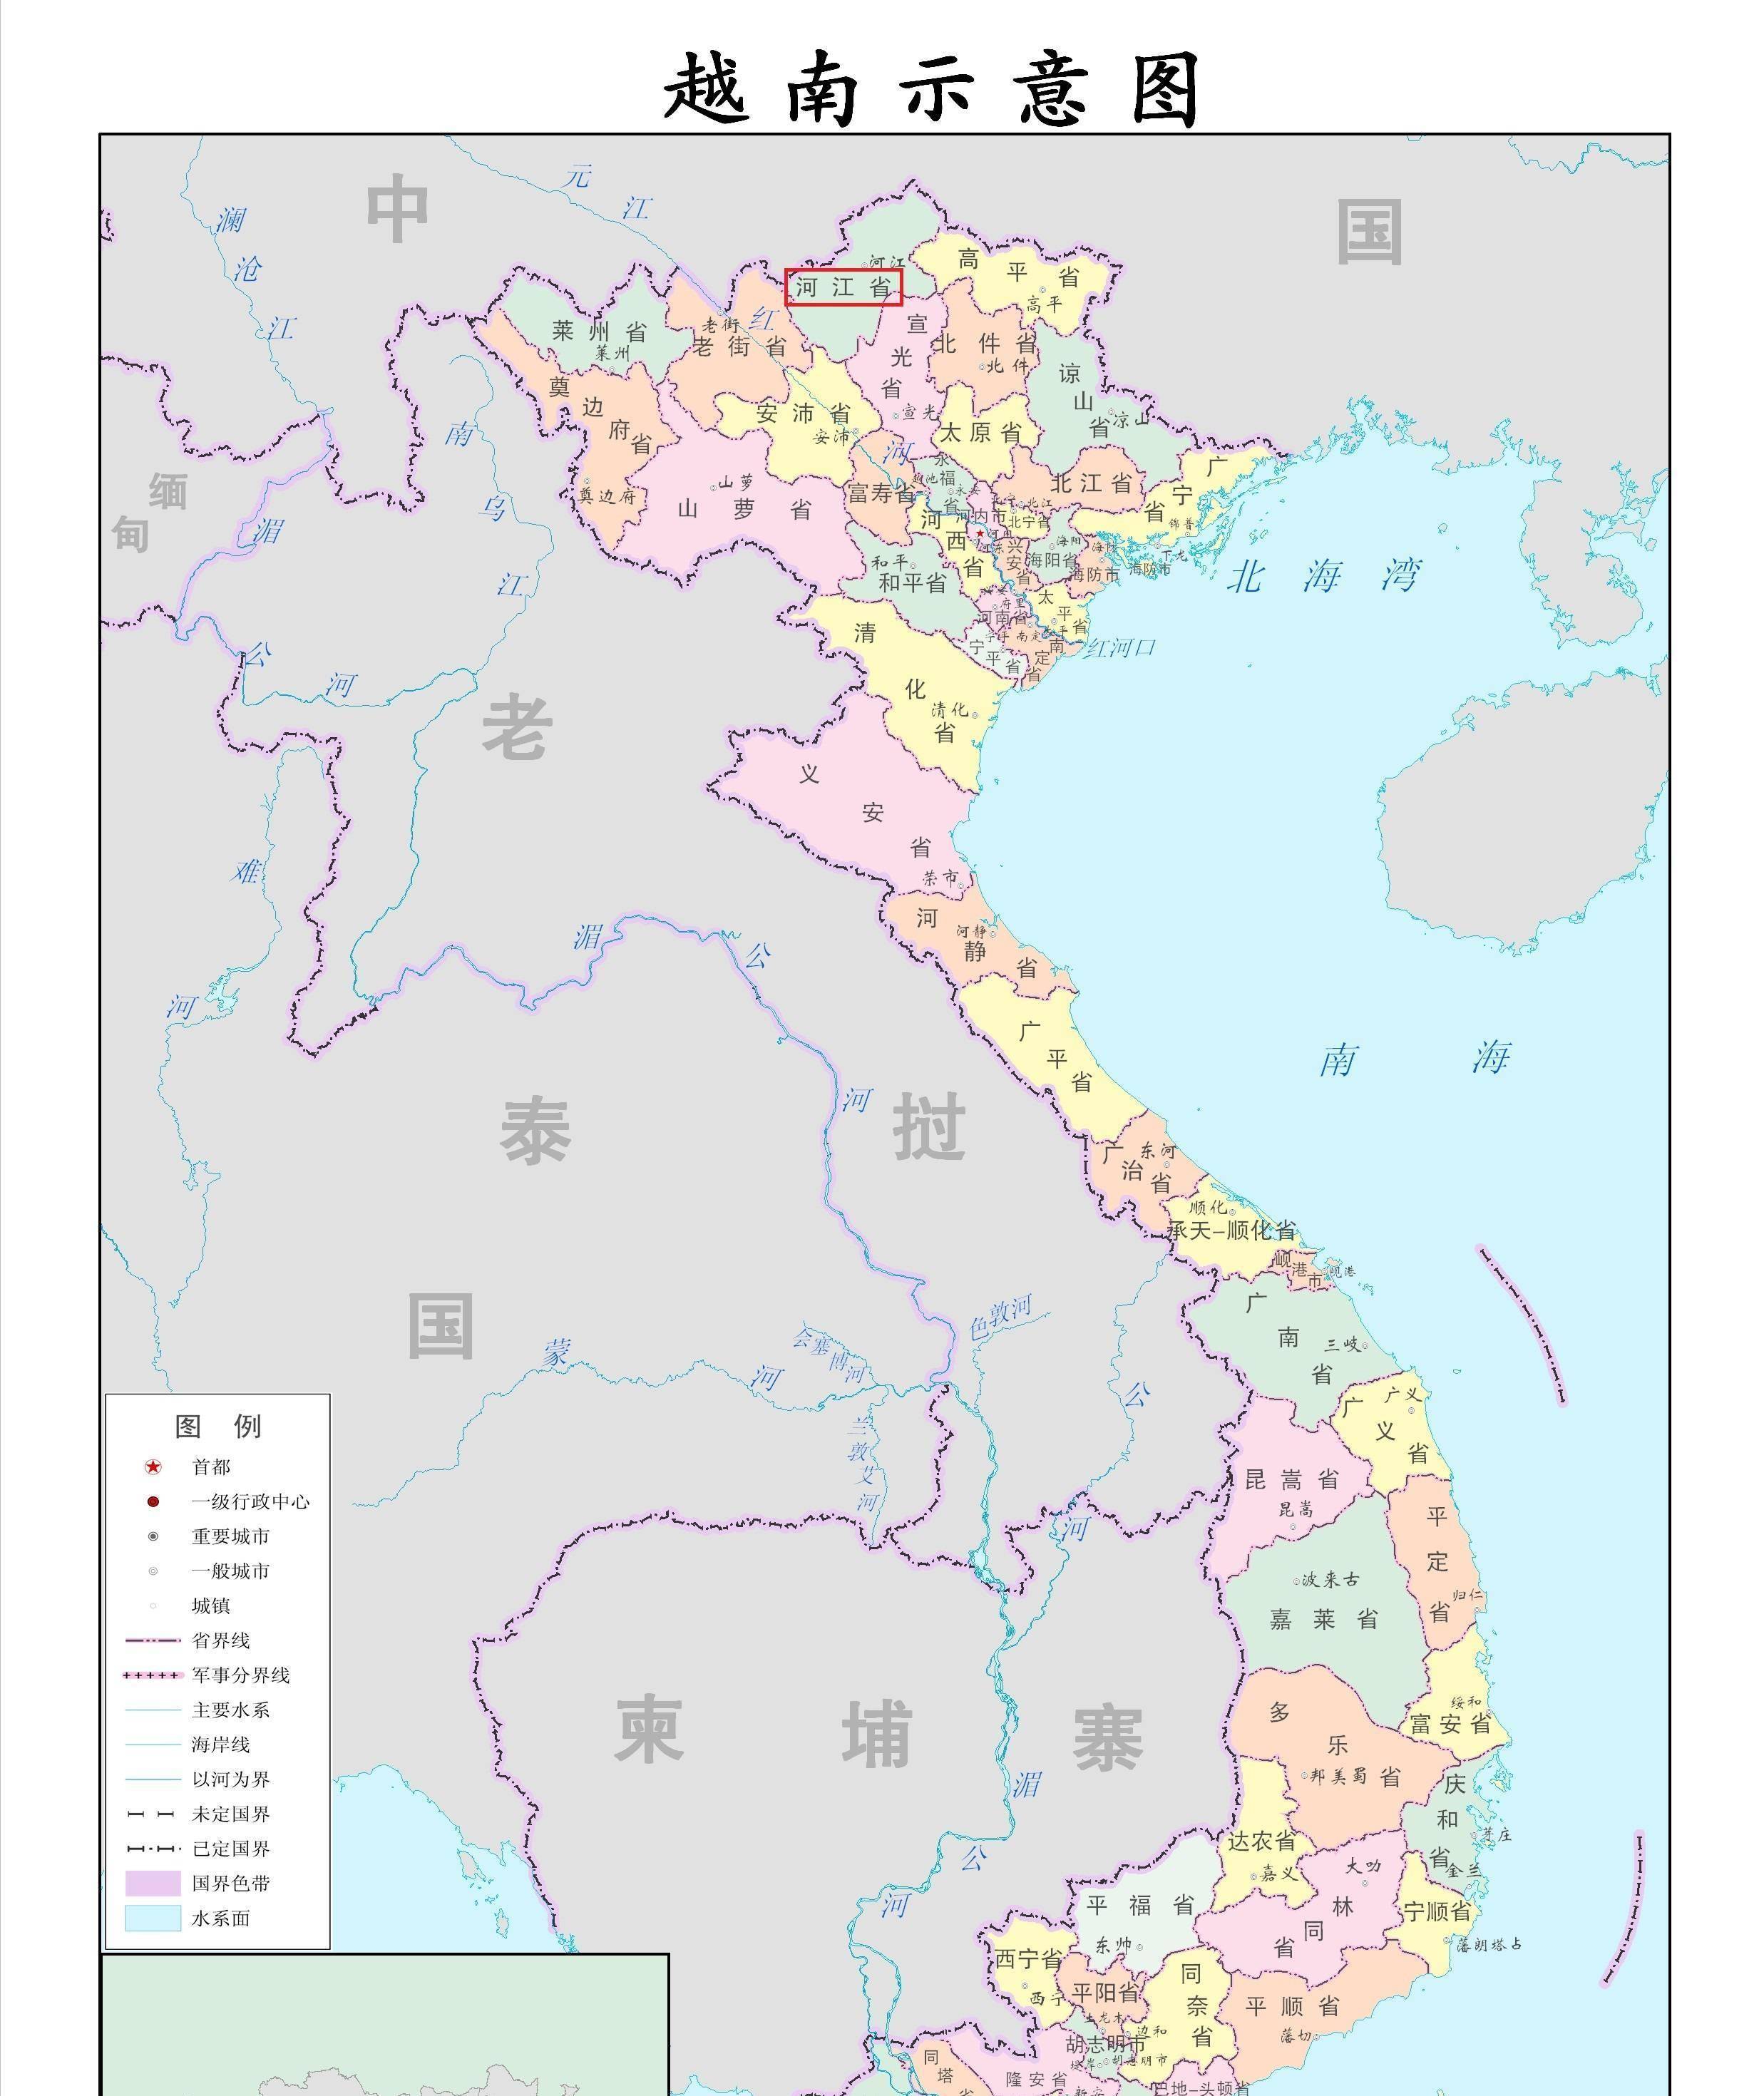 一,越南的地理环境虽然国土面积不大,可越南的省级行